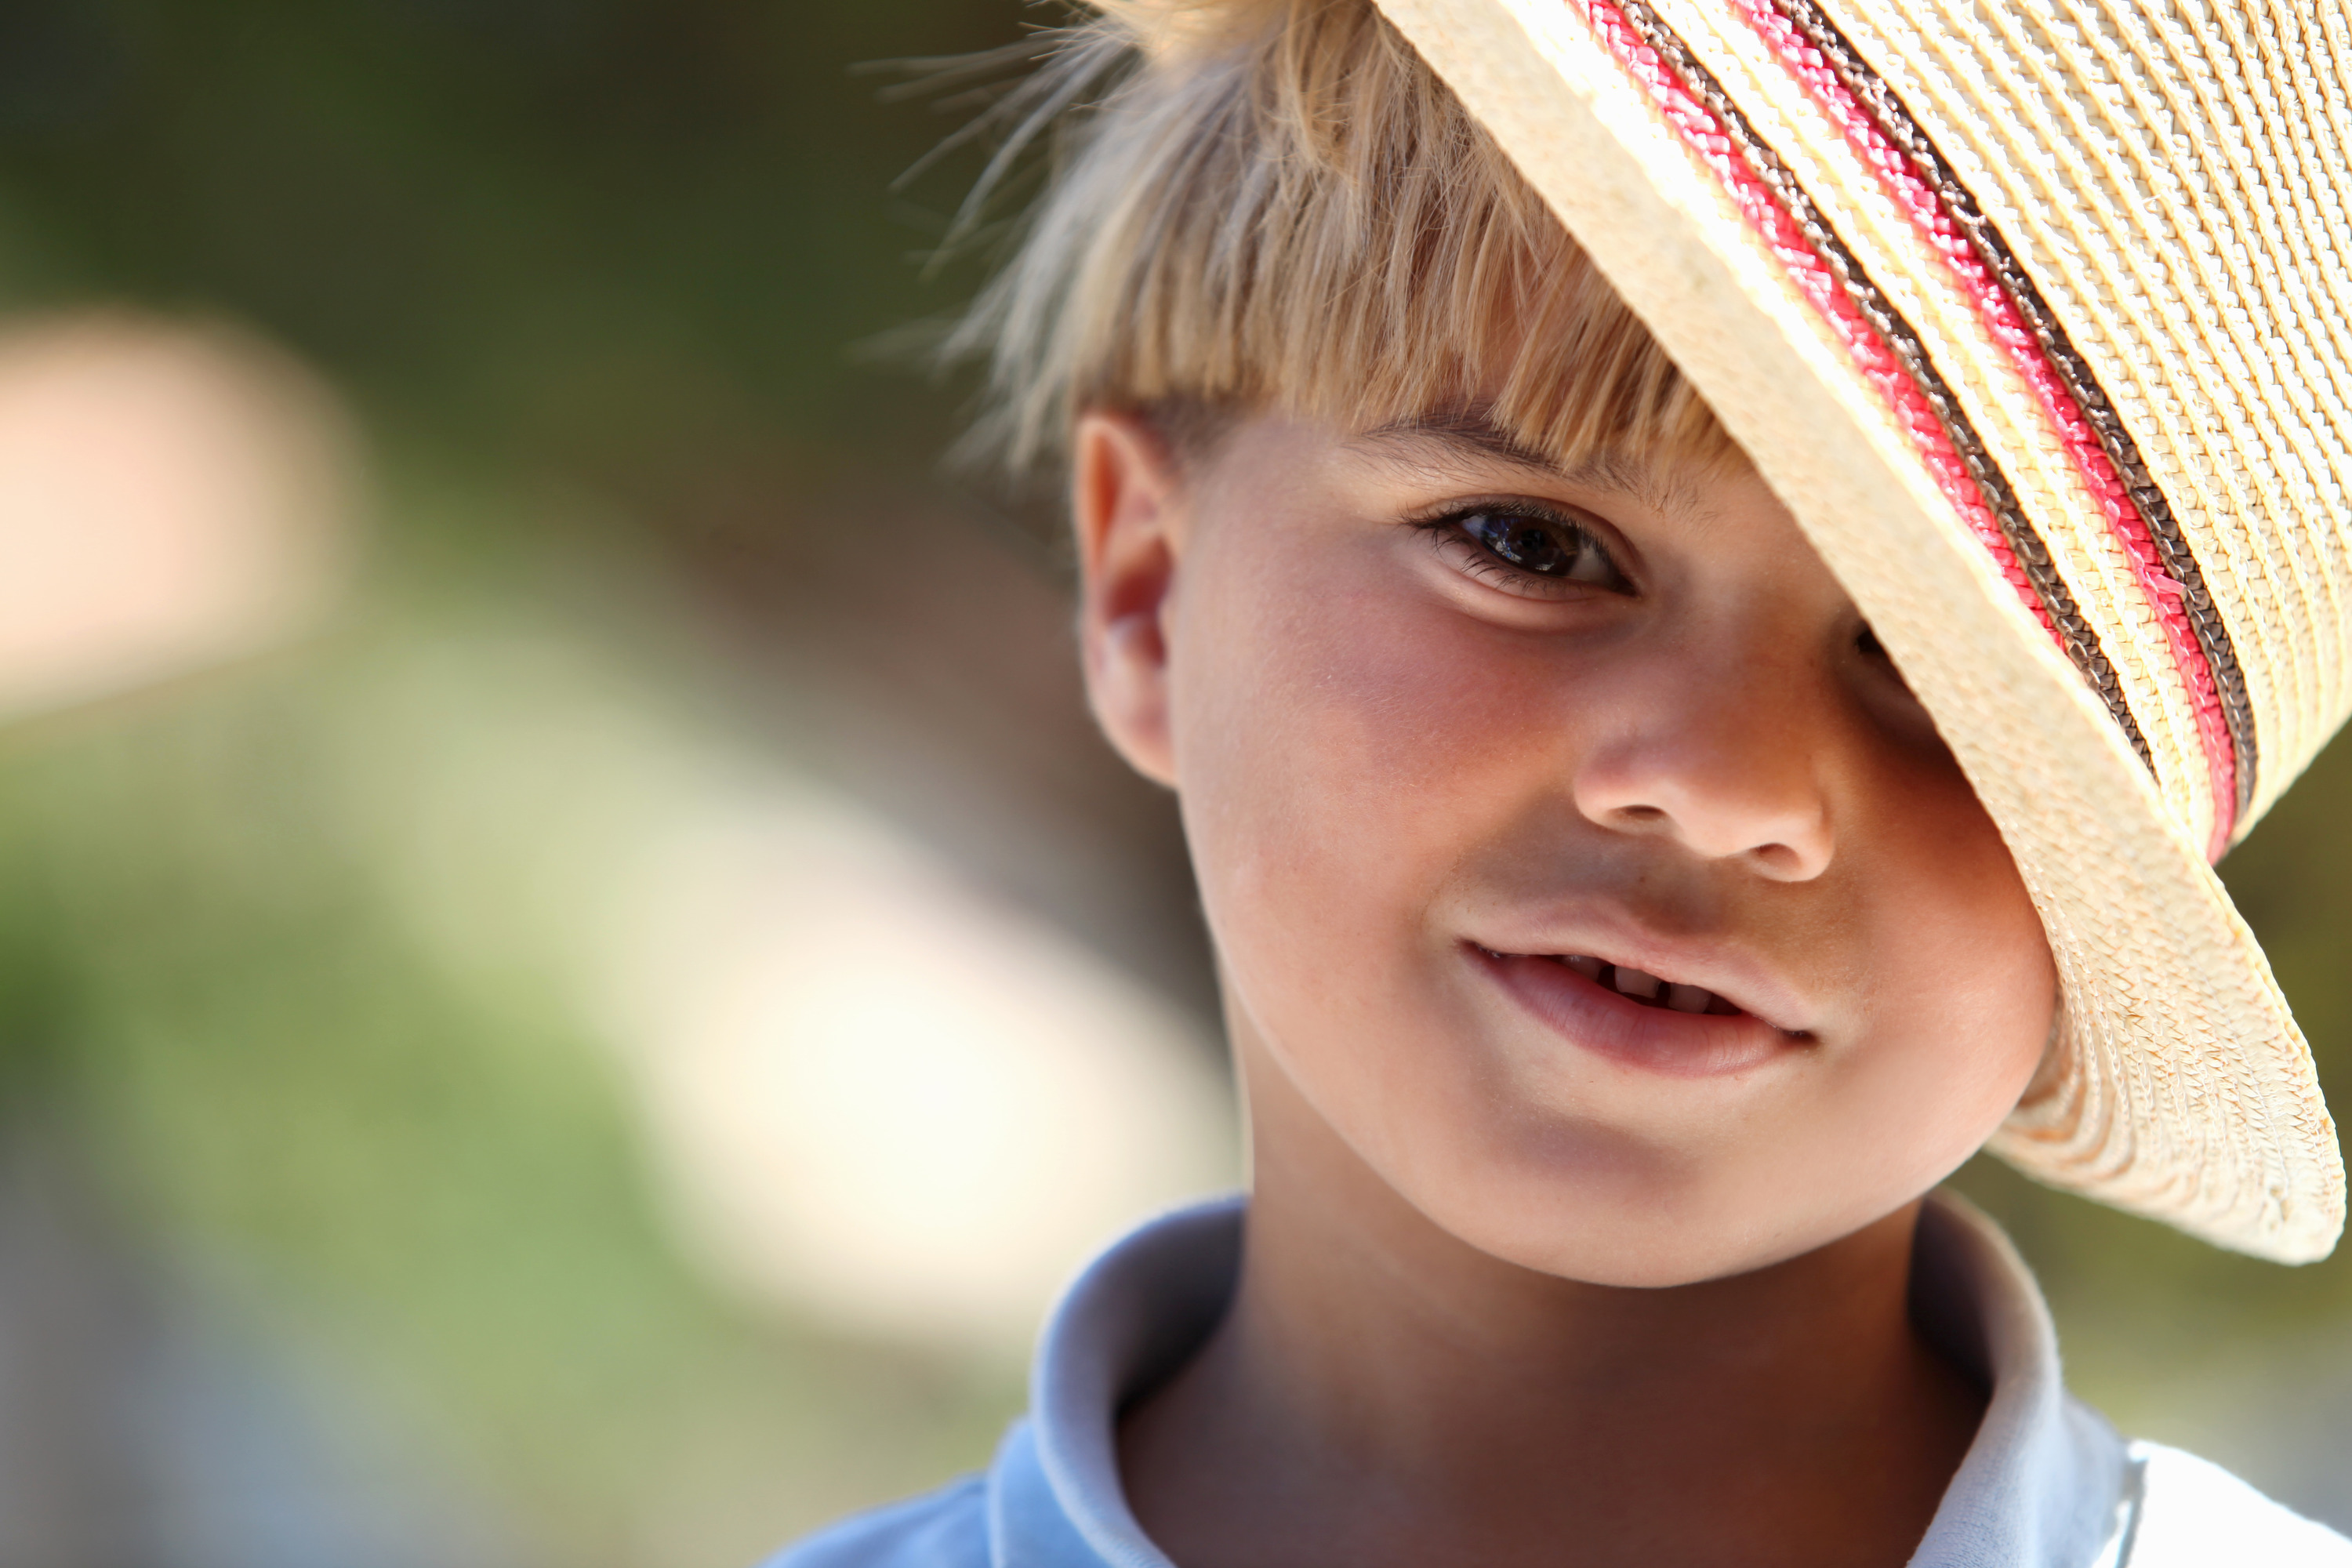 I m wearing my hat. Красивые дети мальчики. Ребенок мальчик. Шляпа для мальчика. Красивые дети мальчики в шляпах.